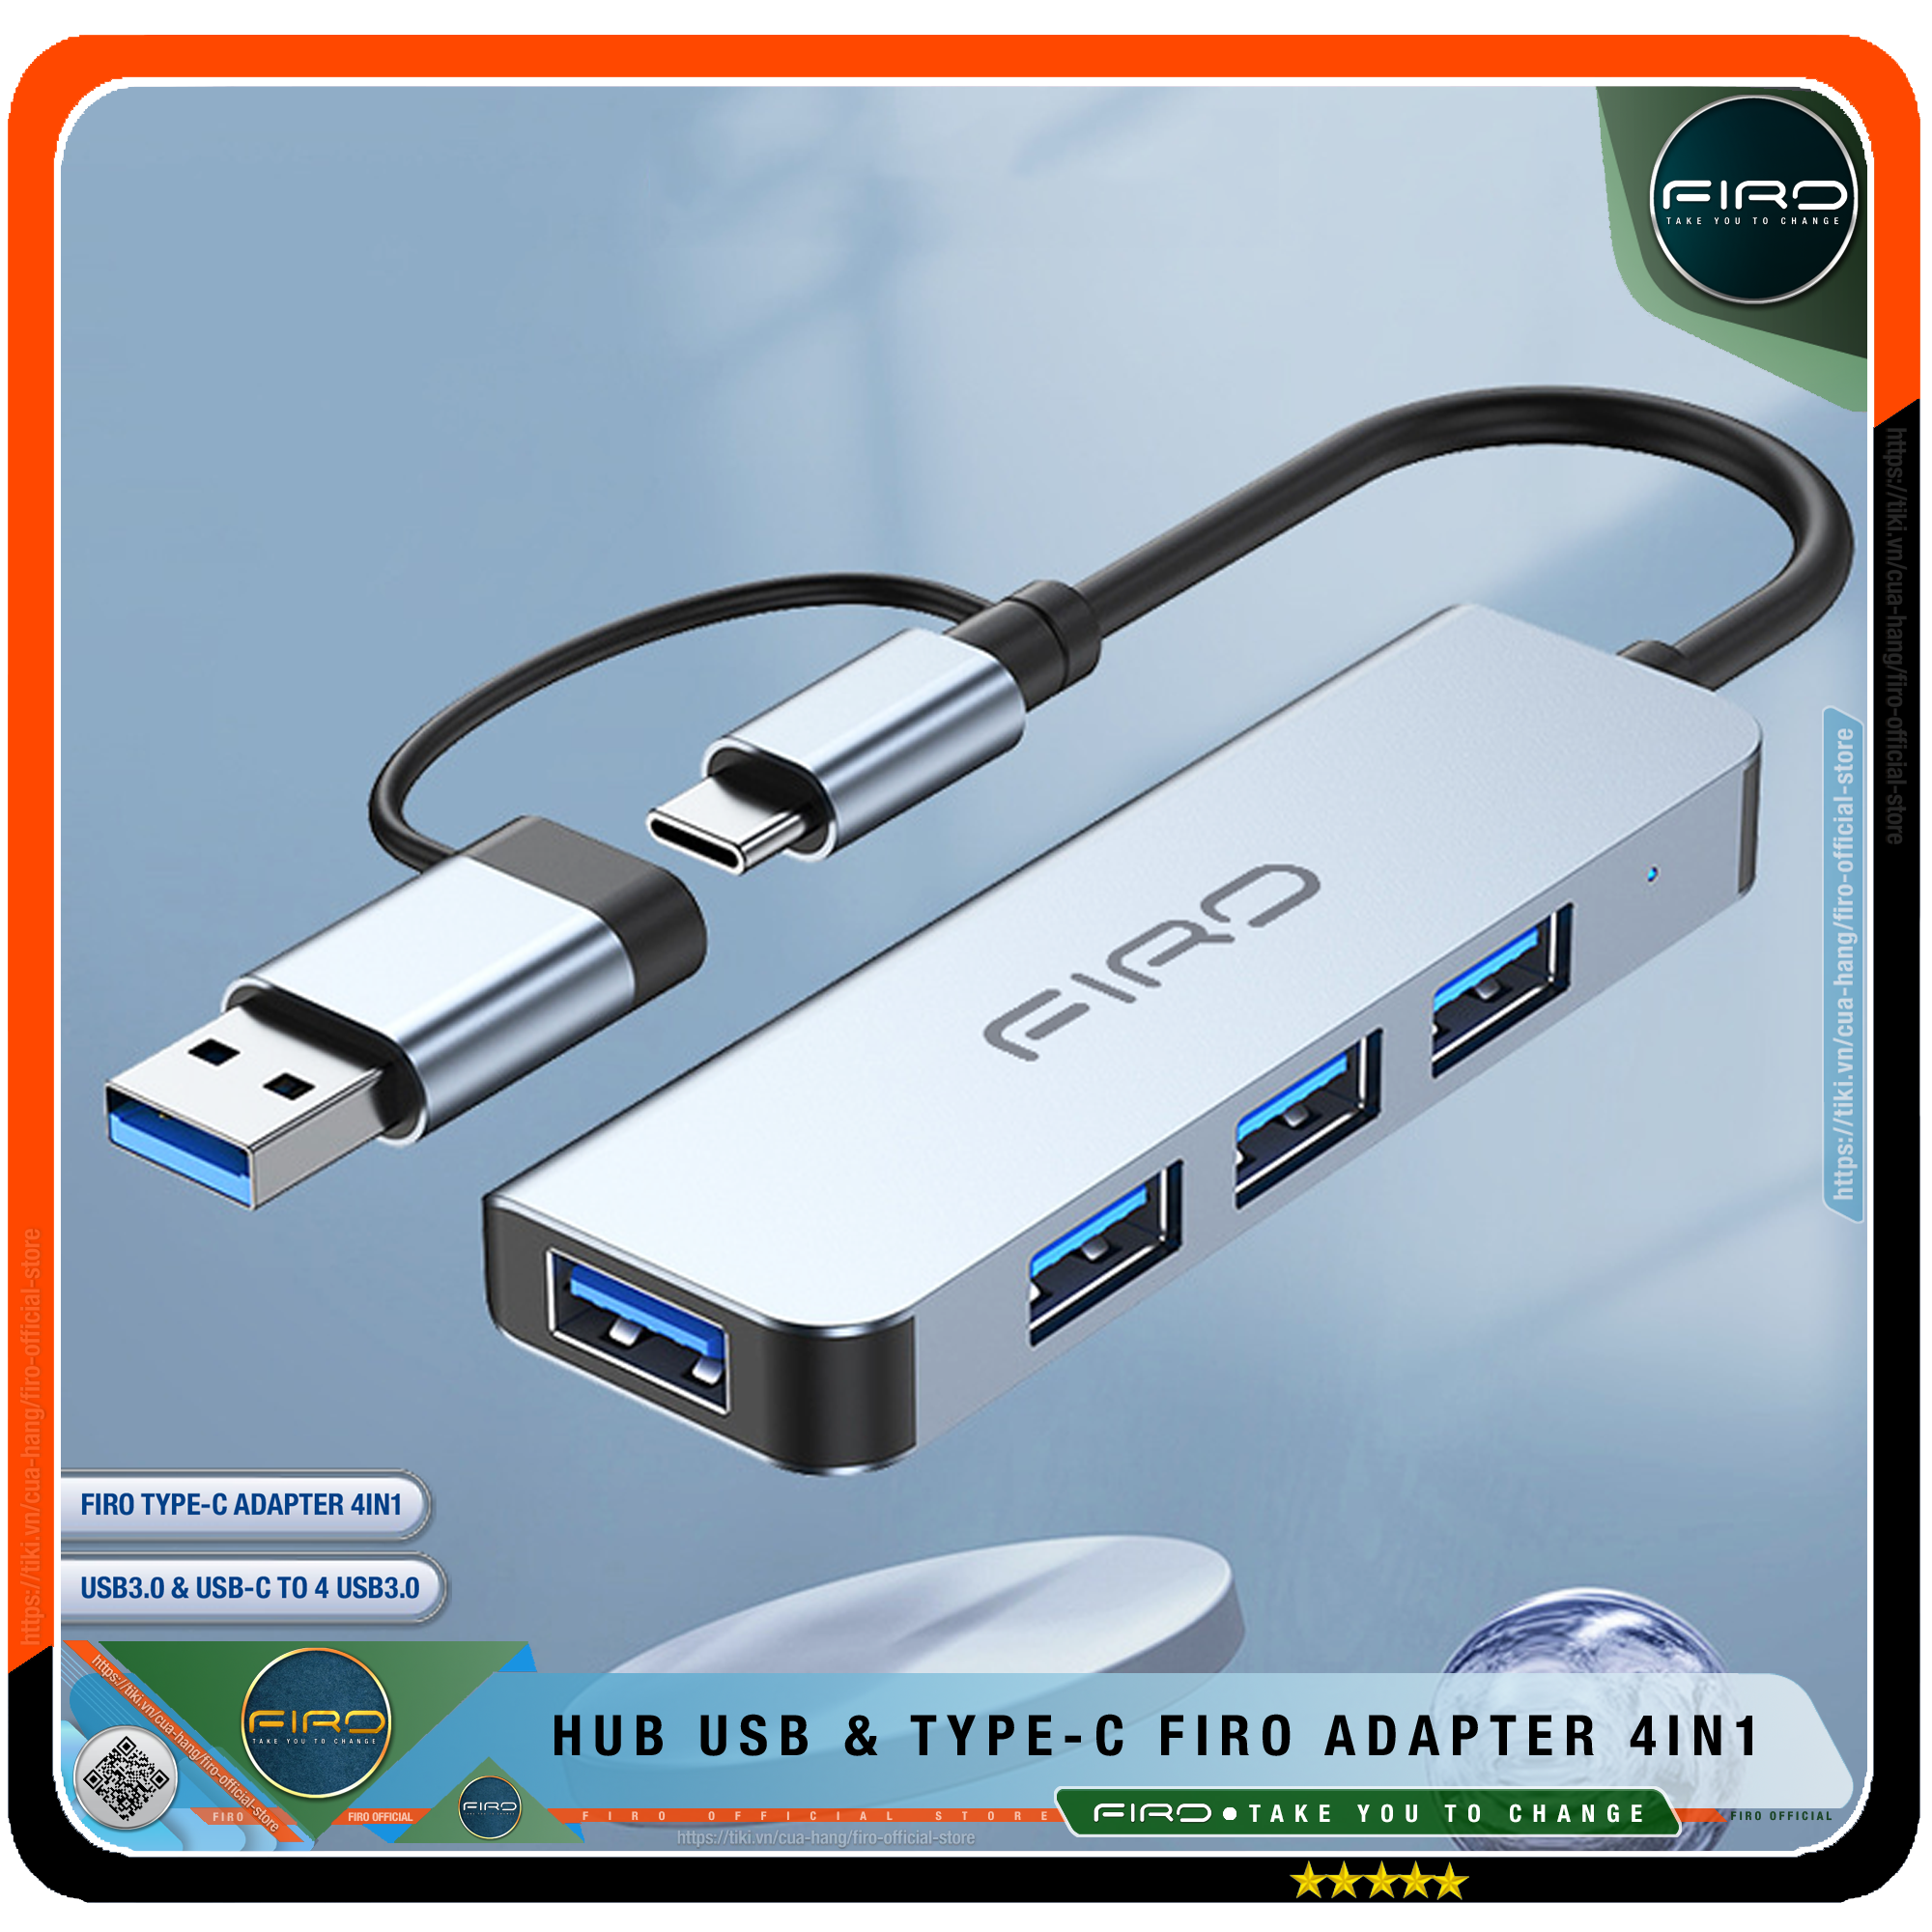 Hub USB 3.0 FIRO Và Hub Type C FIRO - Bộ Chia Cổng USB FIRO - HUB Chuyển Đổi Dành Cho Laptop, PC - Hỗ Trợ Sạc Pin, Kết Nối Đa Năng Ổ Cứng , Bàn Phím, Chuột, Máy In, Thiết Bị Ổ Chia USB - FIRO Type C Adapter 4in1 - Hàng Chính Hãng